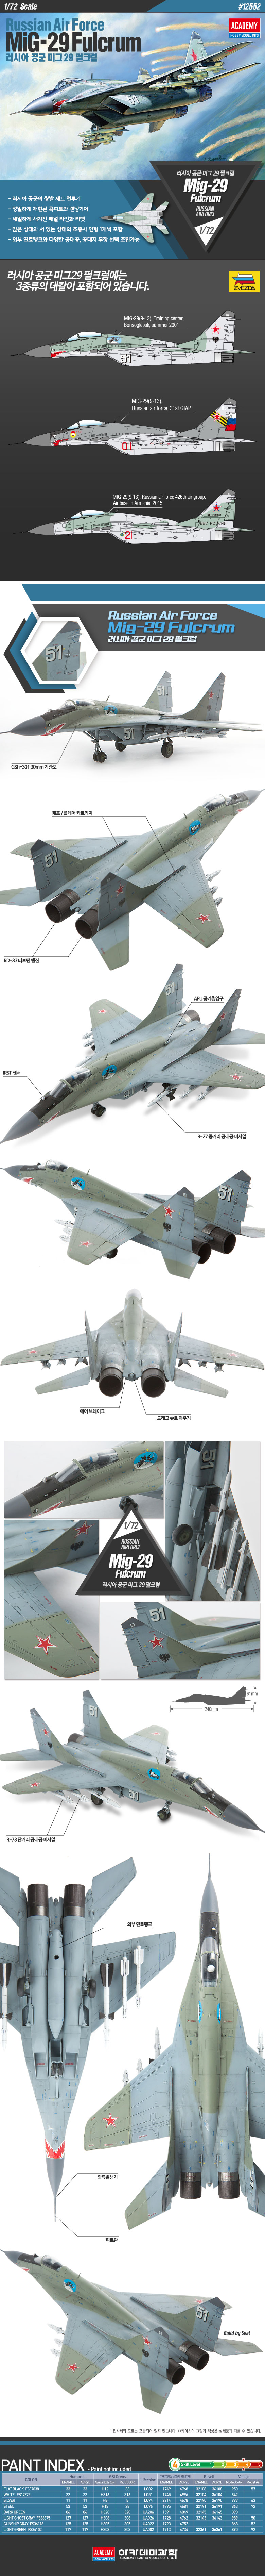 1/72 ロシア空軍 MiG-29 ファルクラム